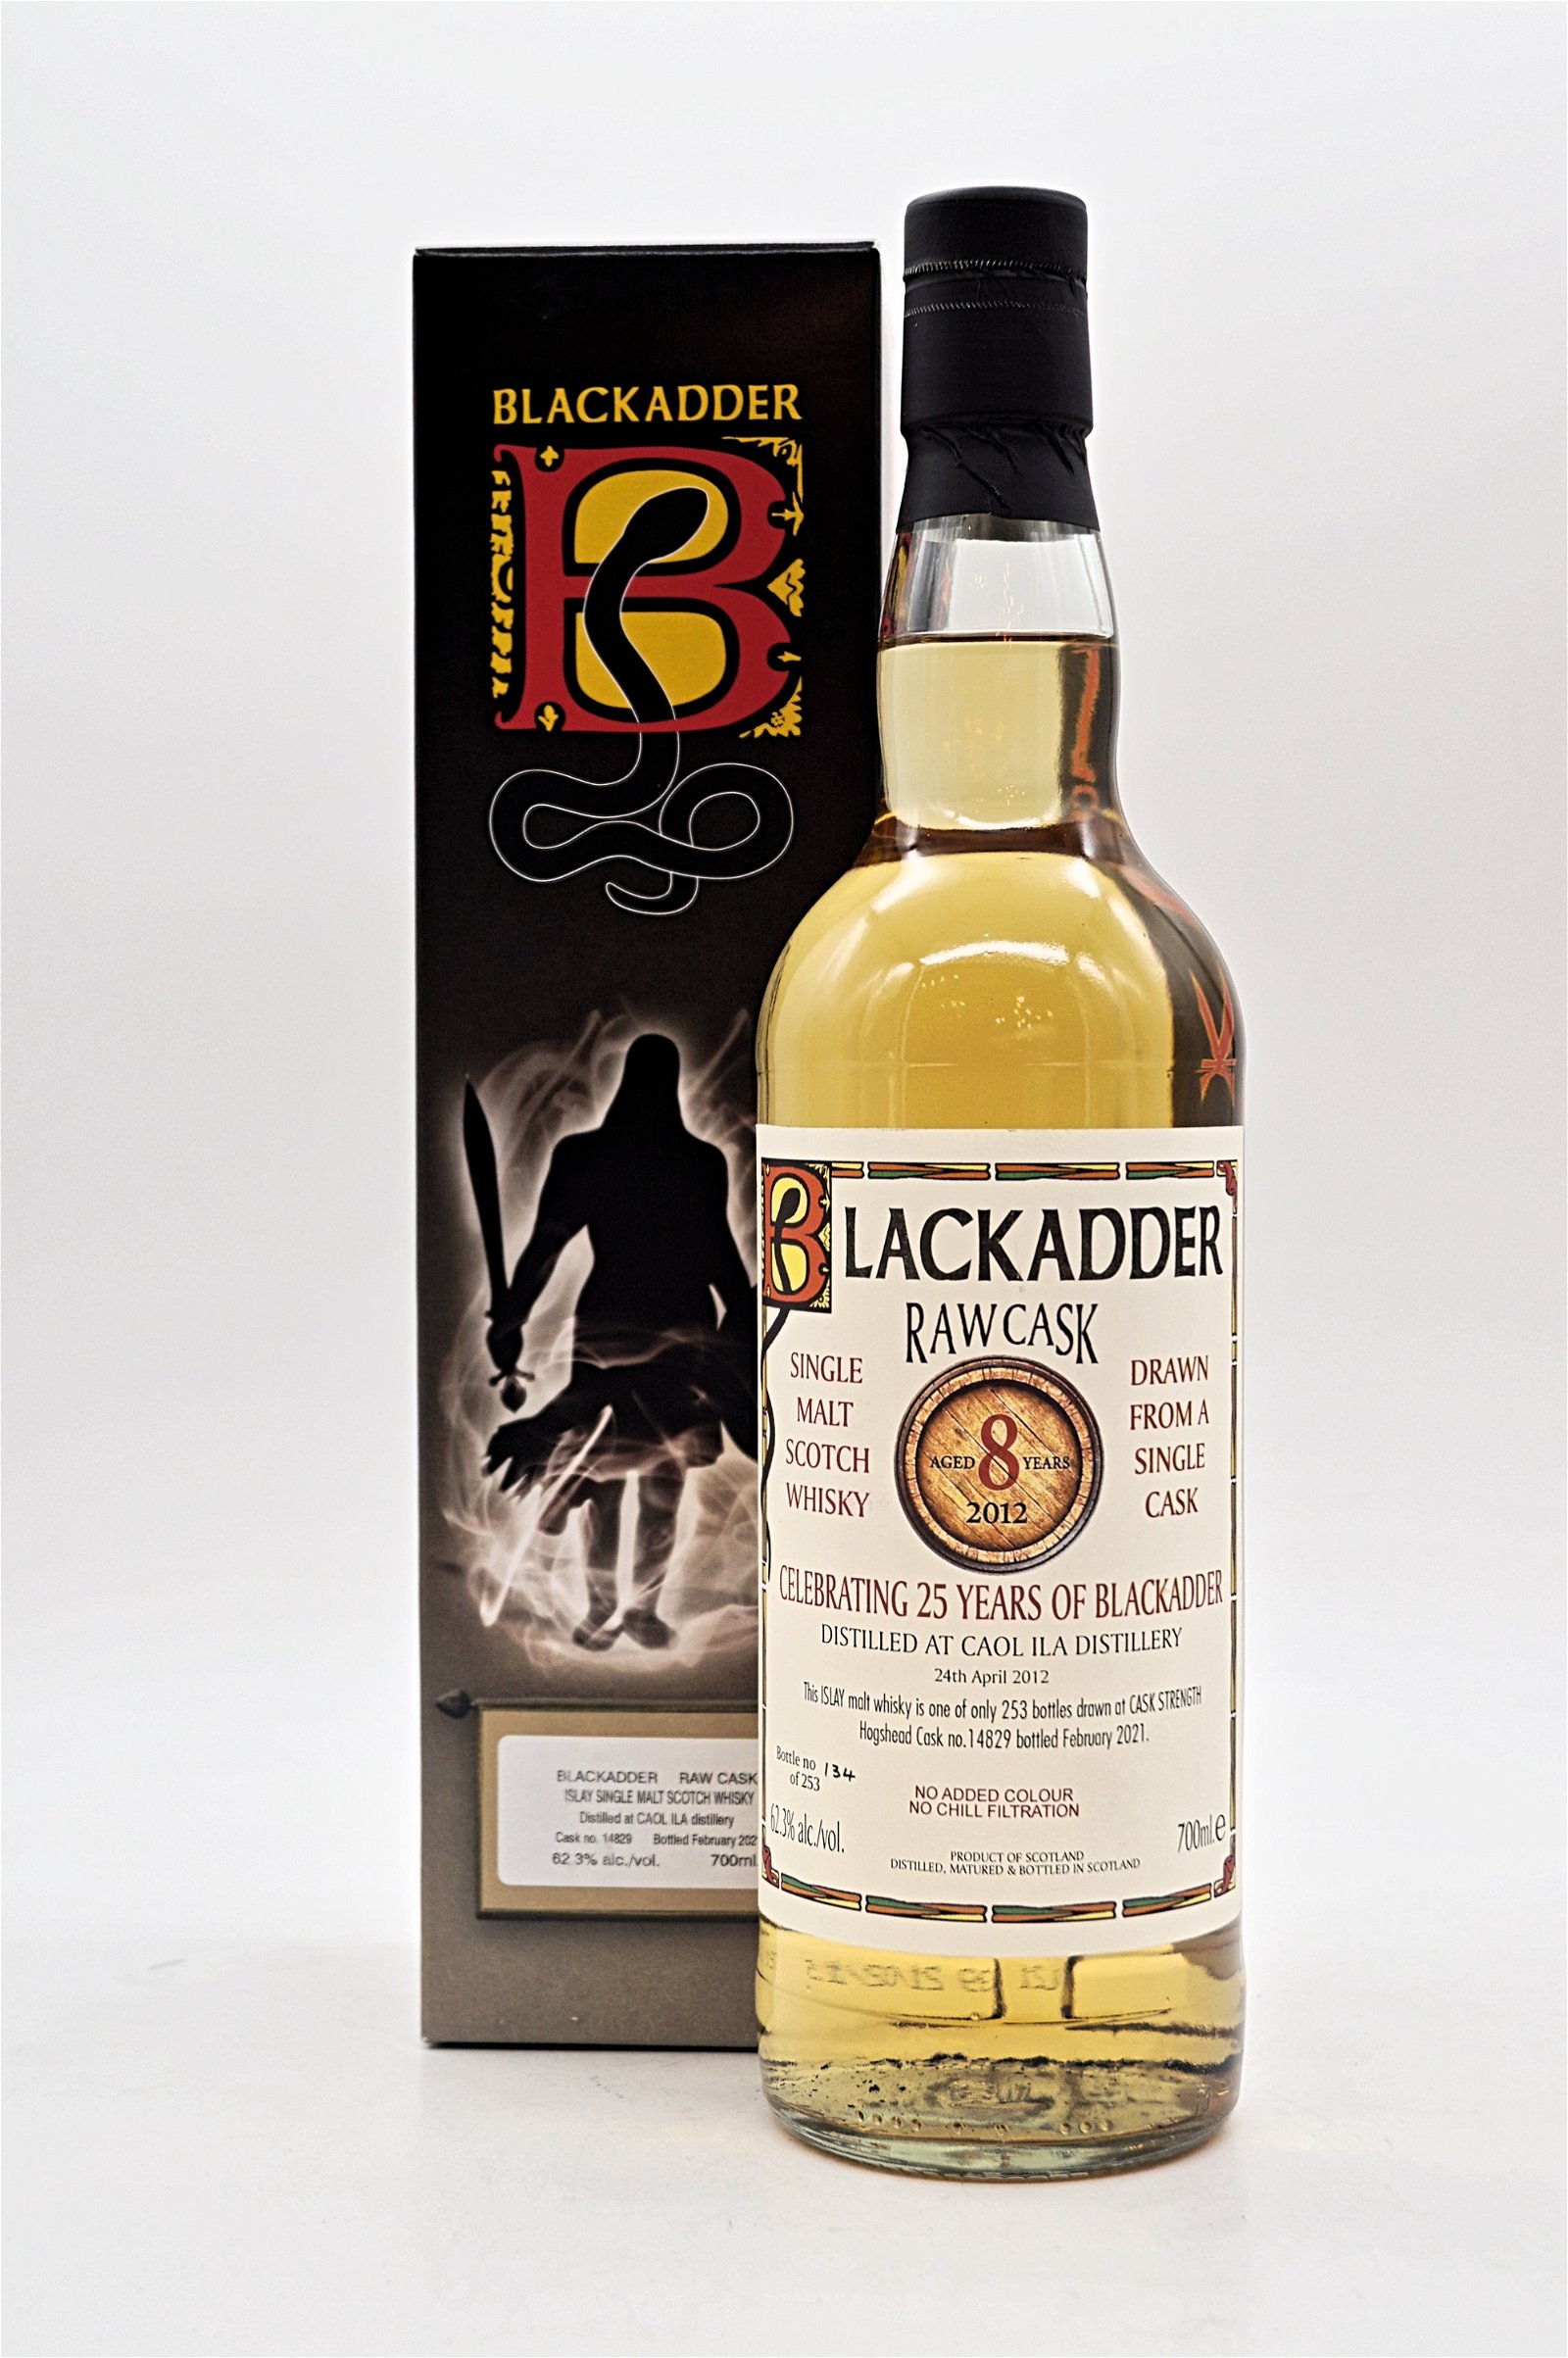 Blackadder 8 Jahre Caol Ila Raw Cask No 14829 Islay Single Malt Scotch Whisky